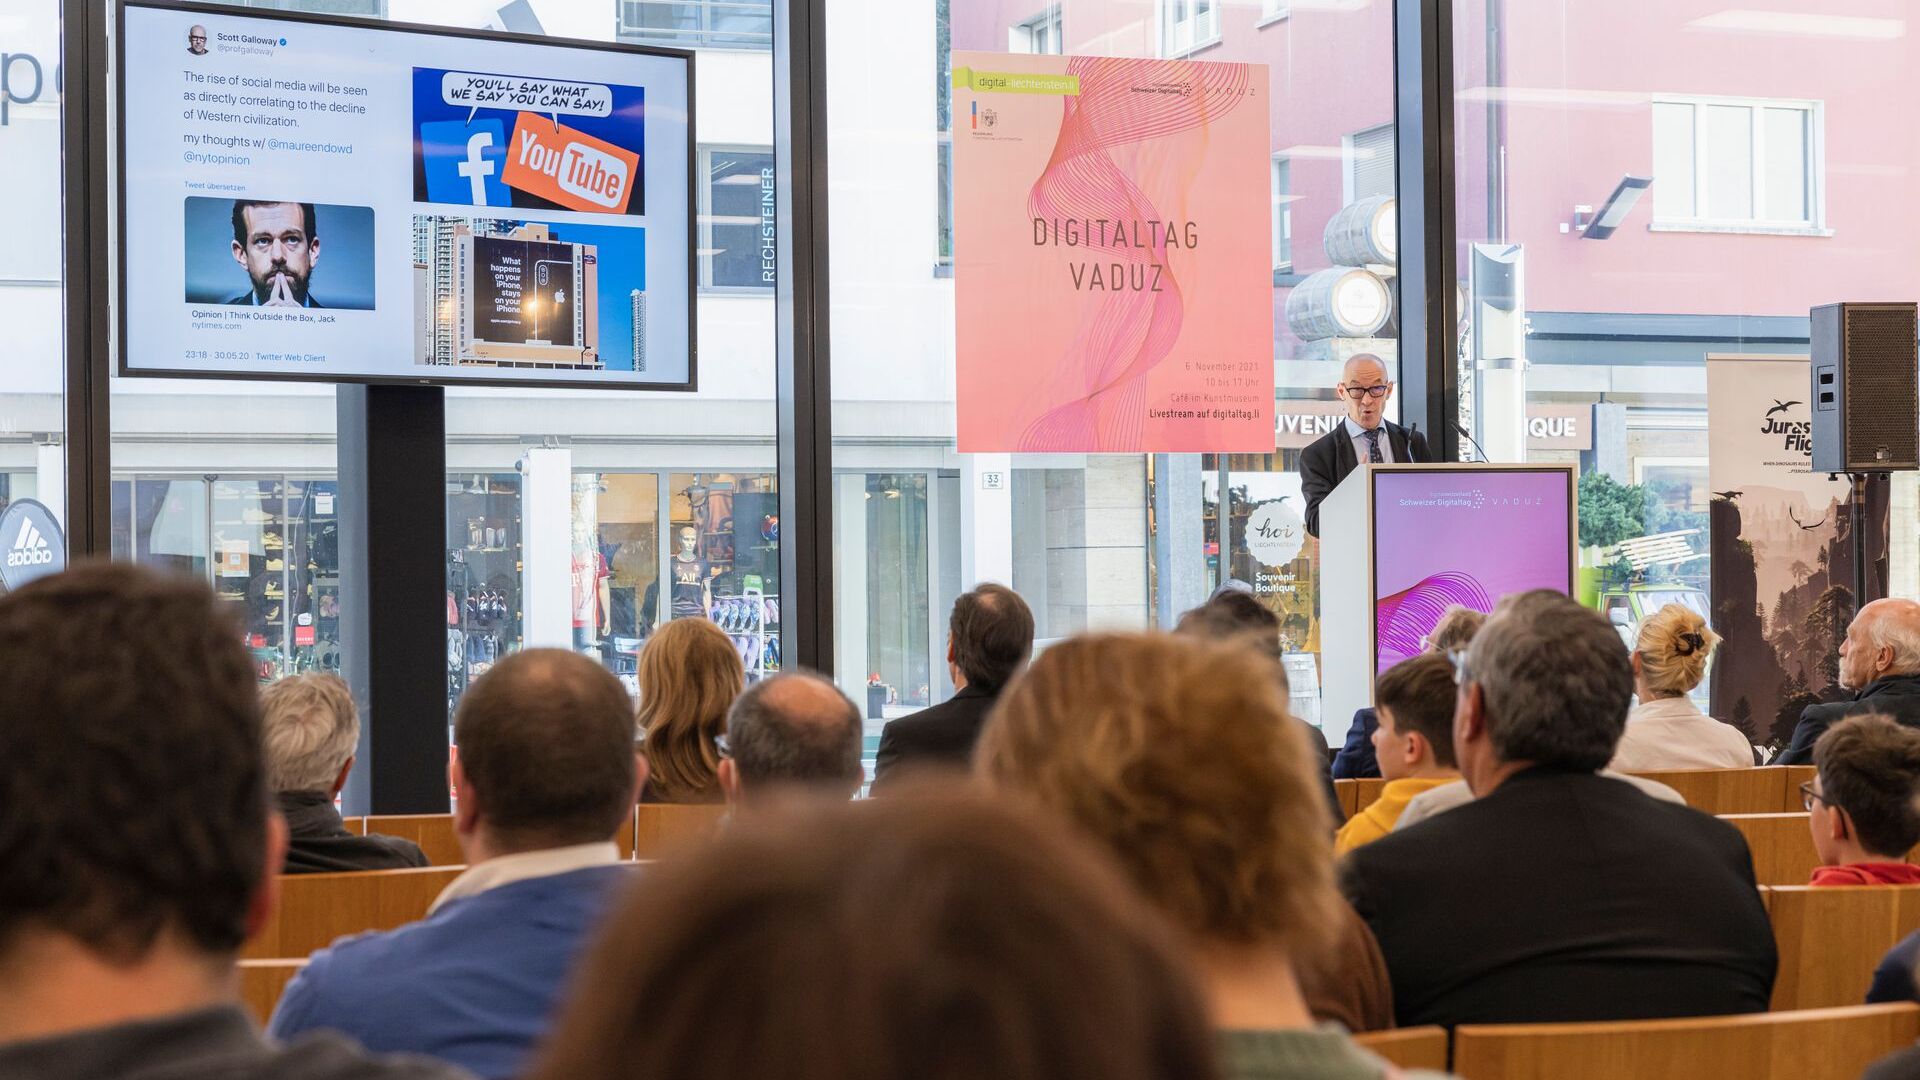 El "Digitaltag Vaduz", acogido por el Kunstmuseum de la capital del Principado de Liechtenstein el sábado 6 de noviembre de 2021, despertó el entusiasmo del público y de los ponentes en analogía con el "Swiss Digital Day" del día 10 siguiente: la intervención de el futurista y experto en tendencias alemanas David Bosshart